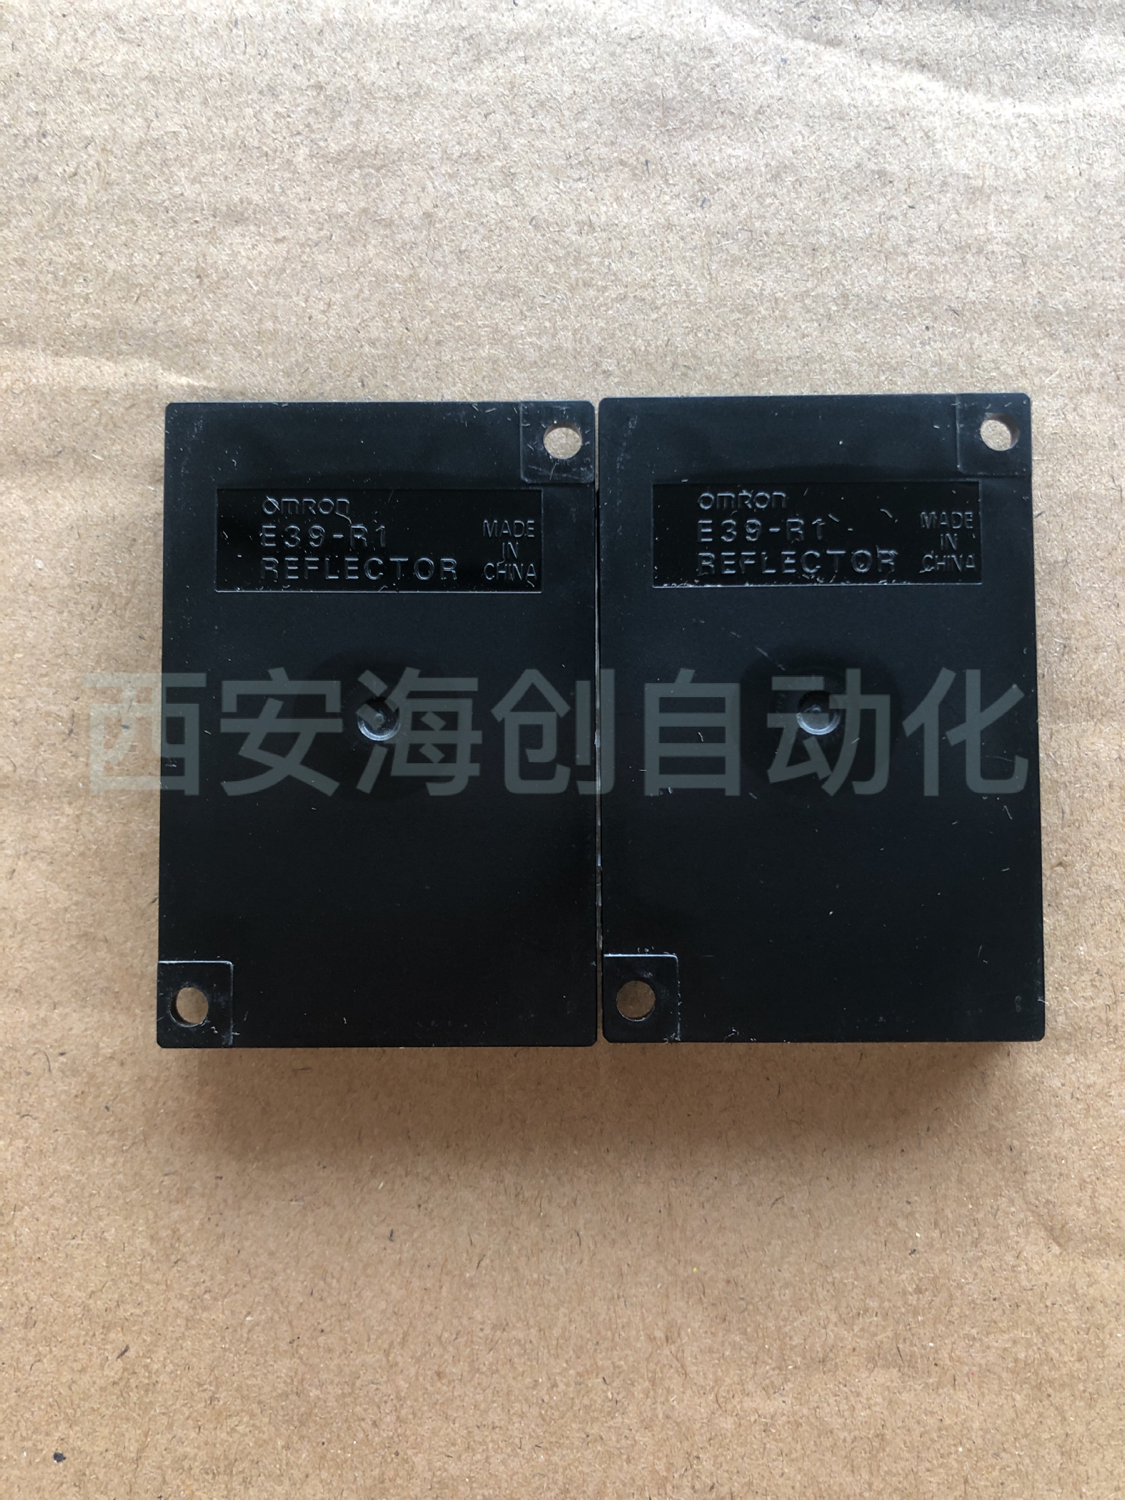 欧姆龙 E39-R光电式传感器附件 反射板 E39-R1 反射板,光电式传感器附件,附件